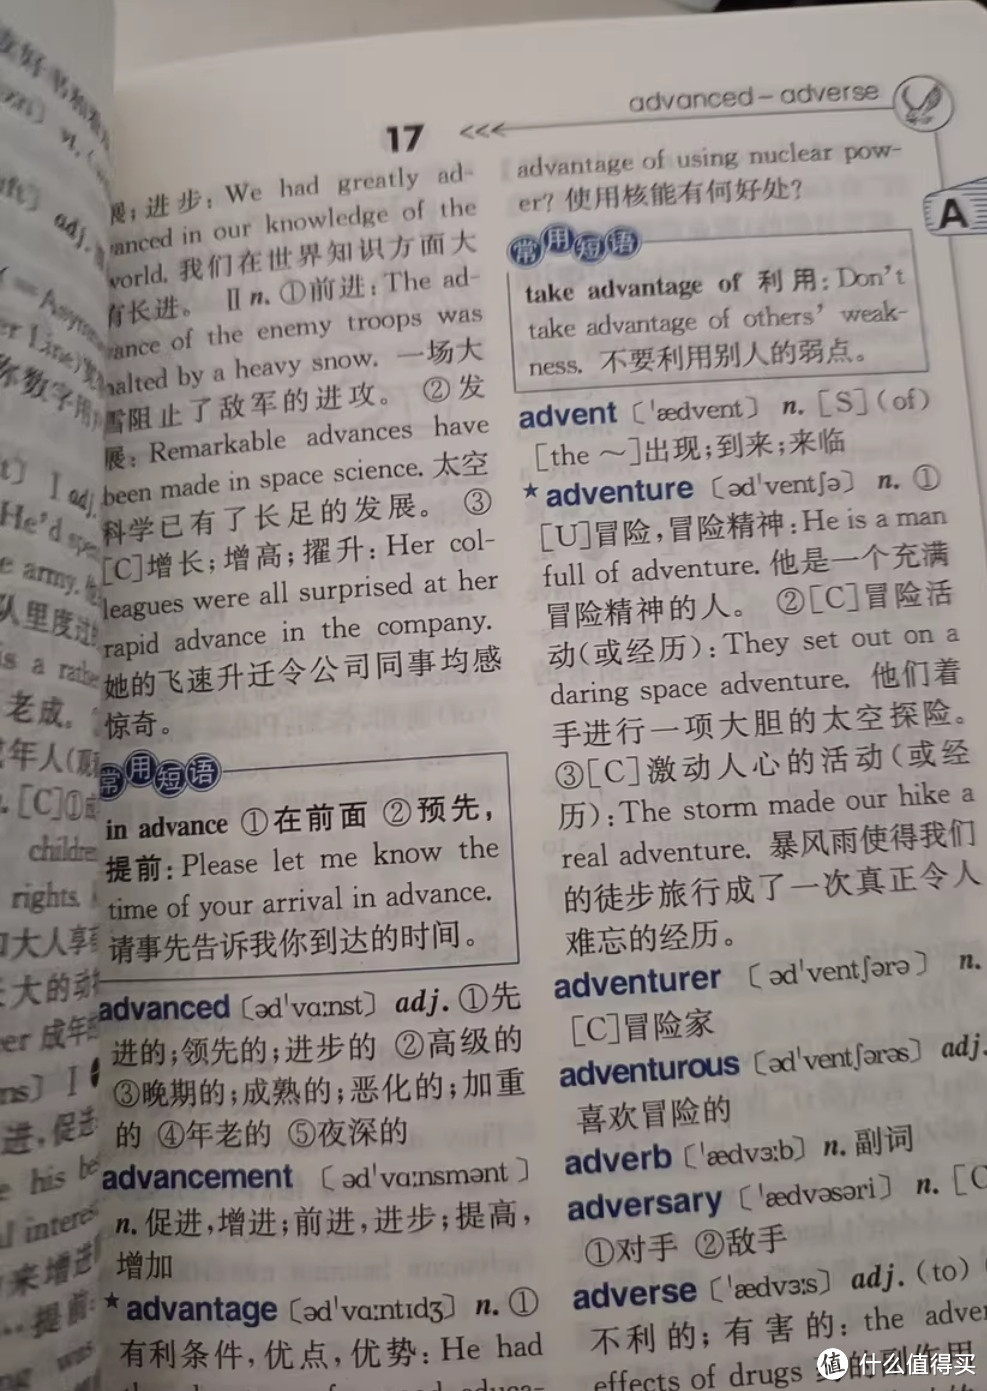 斜杠青年充电计划之学生实用英汉字典